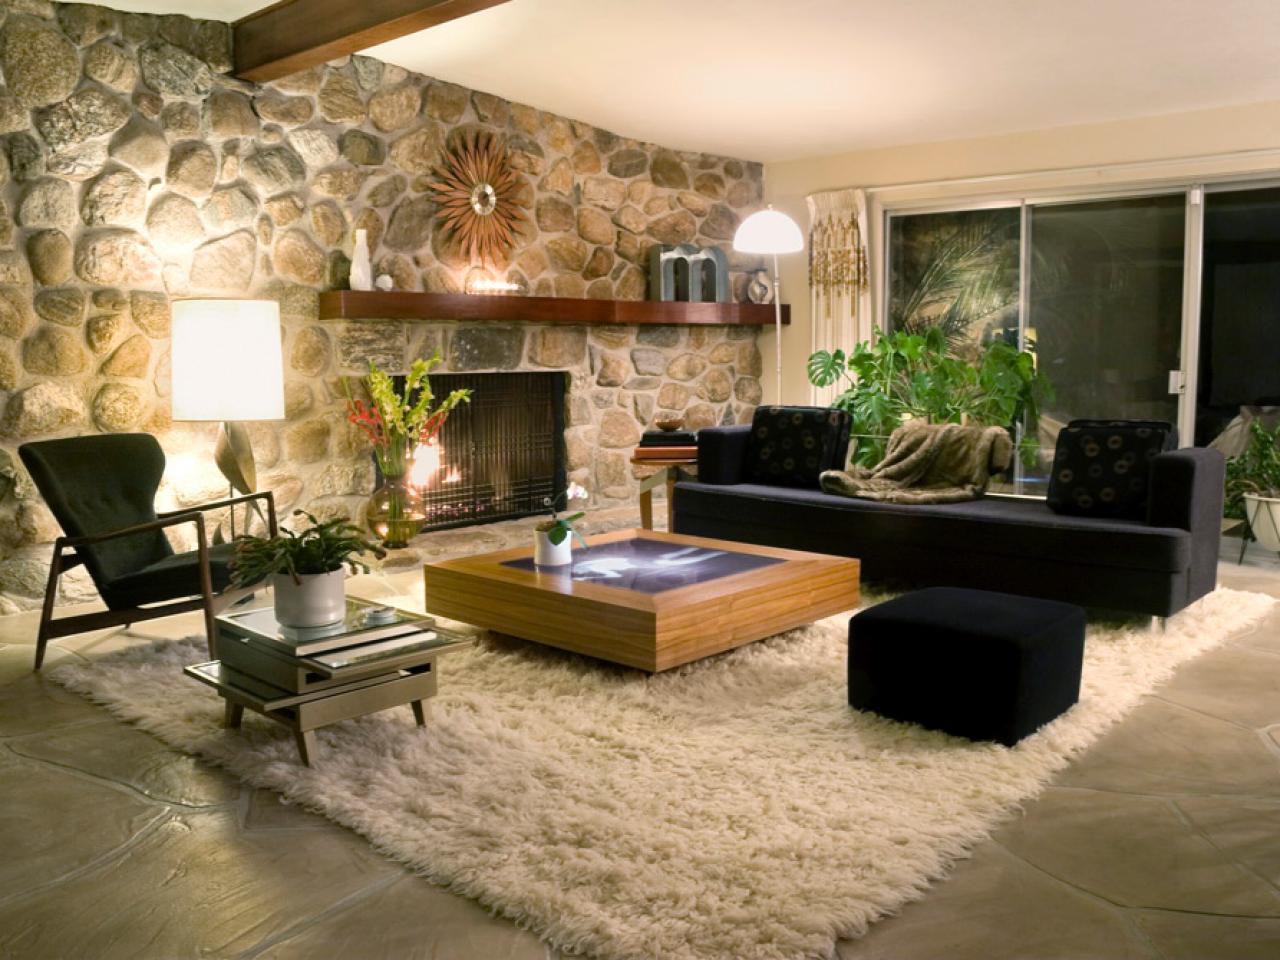 каменная гостиная интерьер stone living room interior скачать